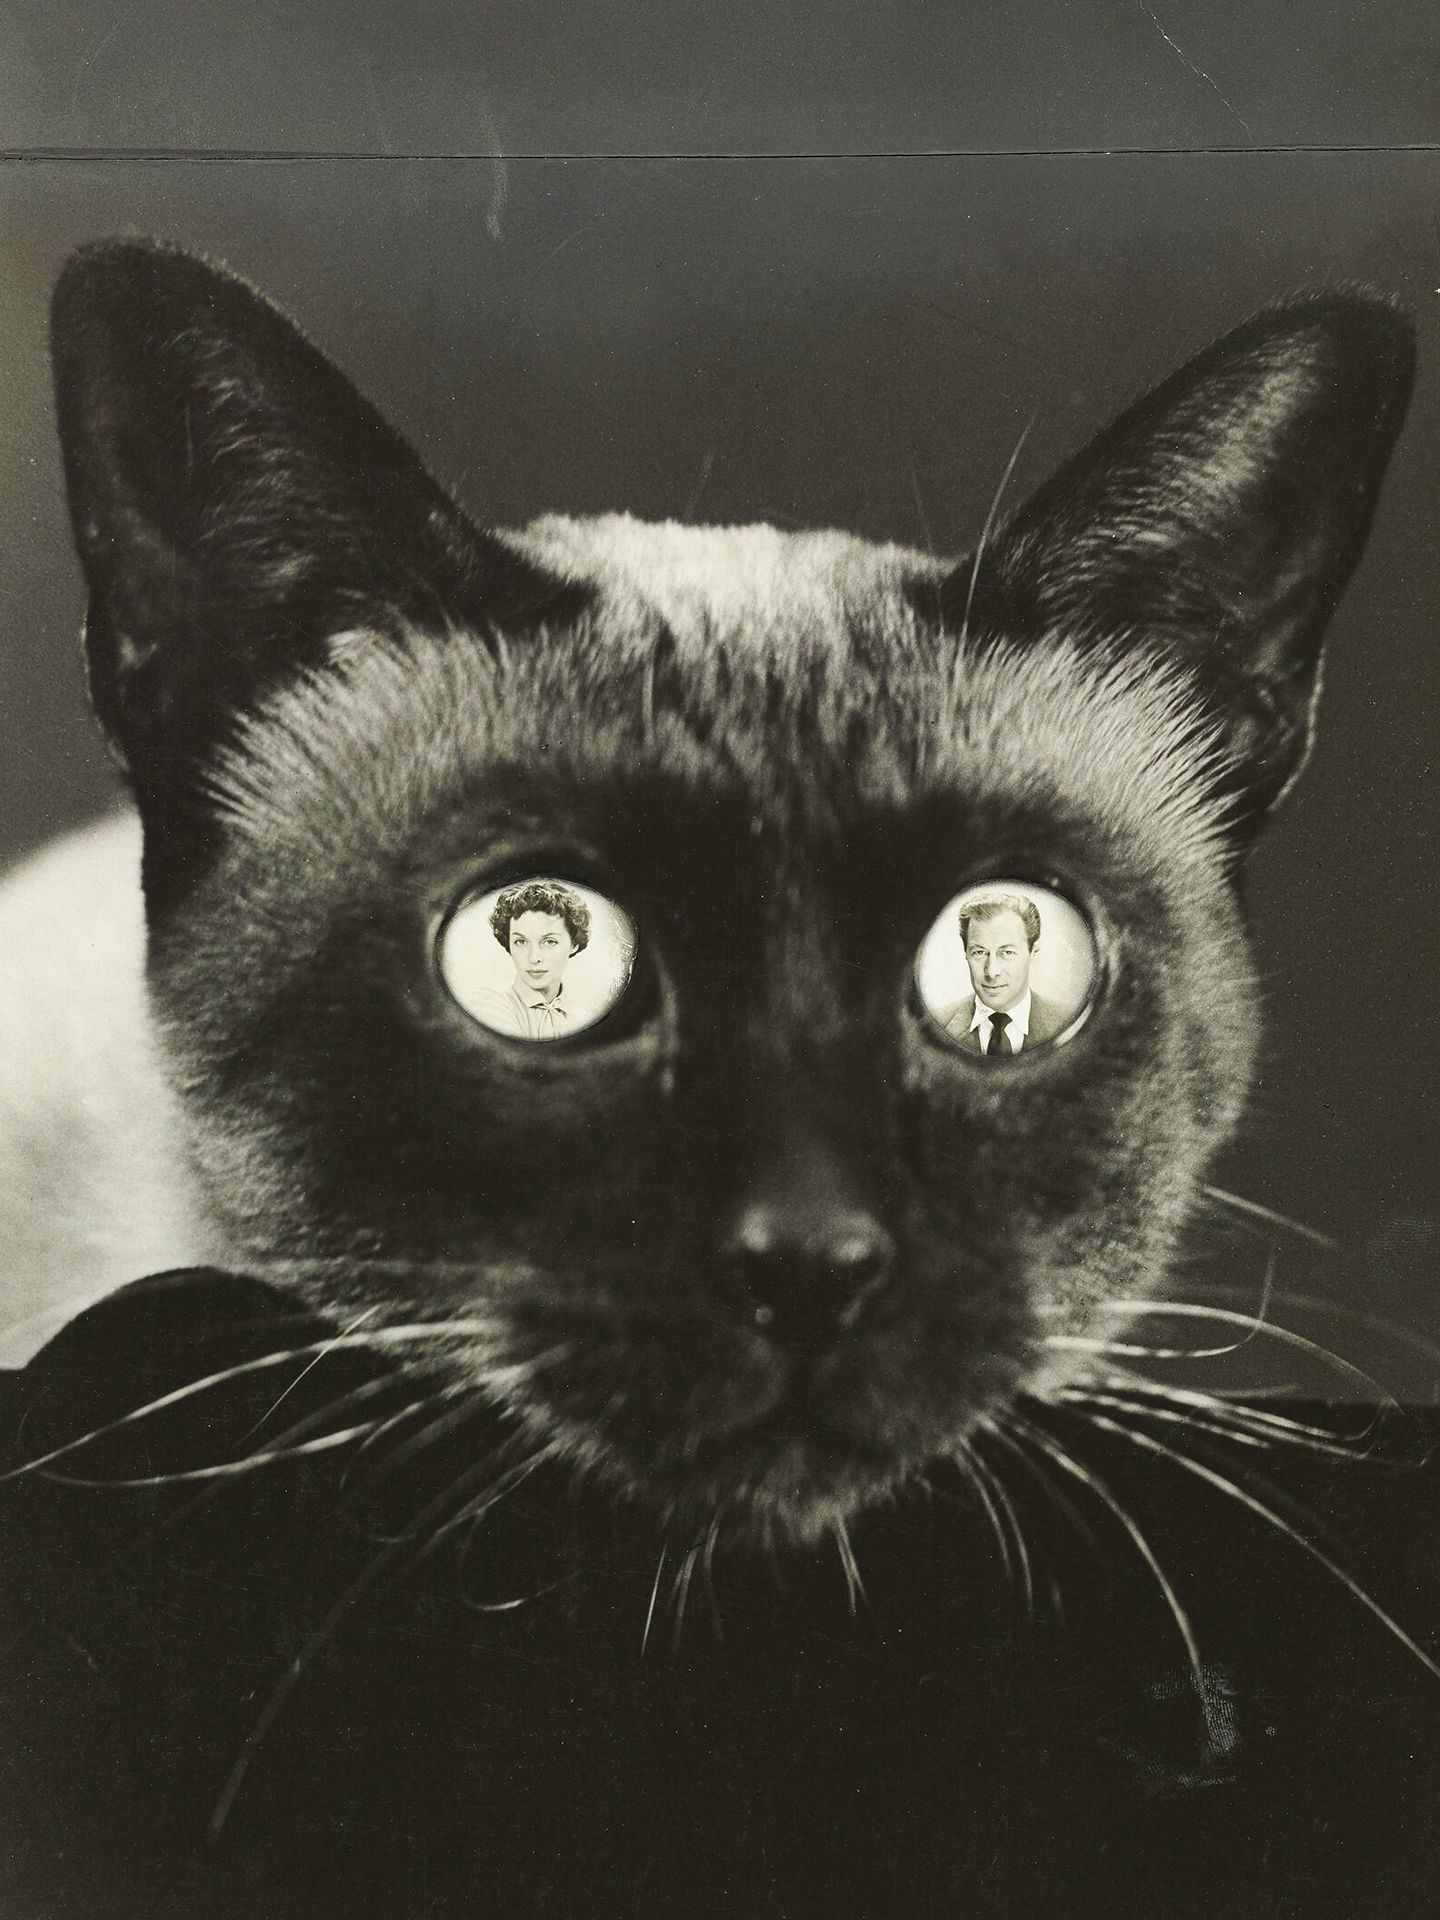 Fotografía de 1950 de Erwin Blumenfeld de Rex Harrison y Lilli Palmer en los ojos de  un gato siamés. Vogue © Condé Nast